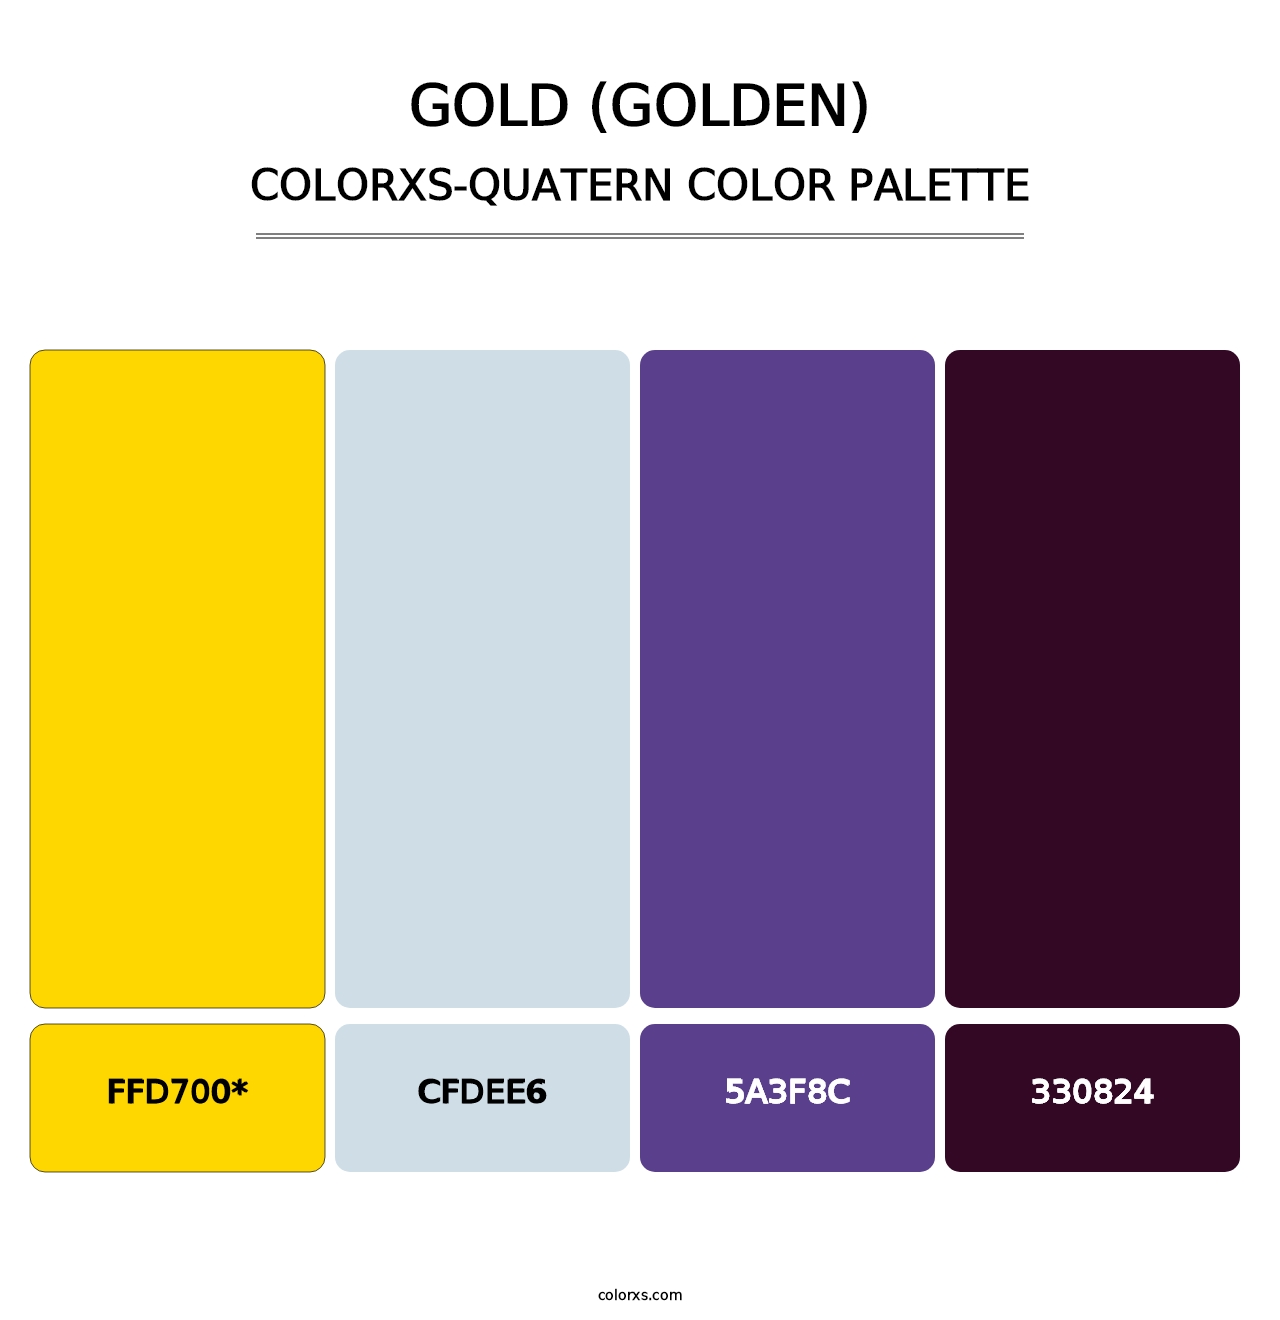 Gold (Golden) - Colorxs Quatern Palette